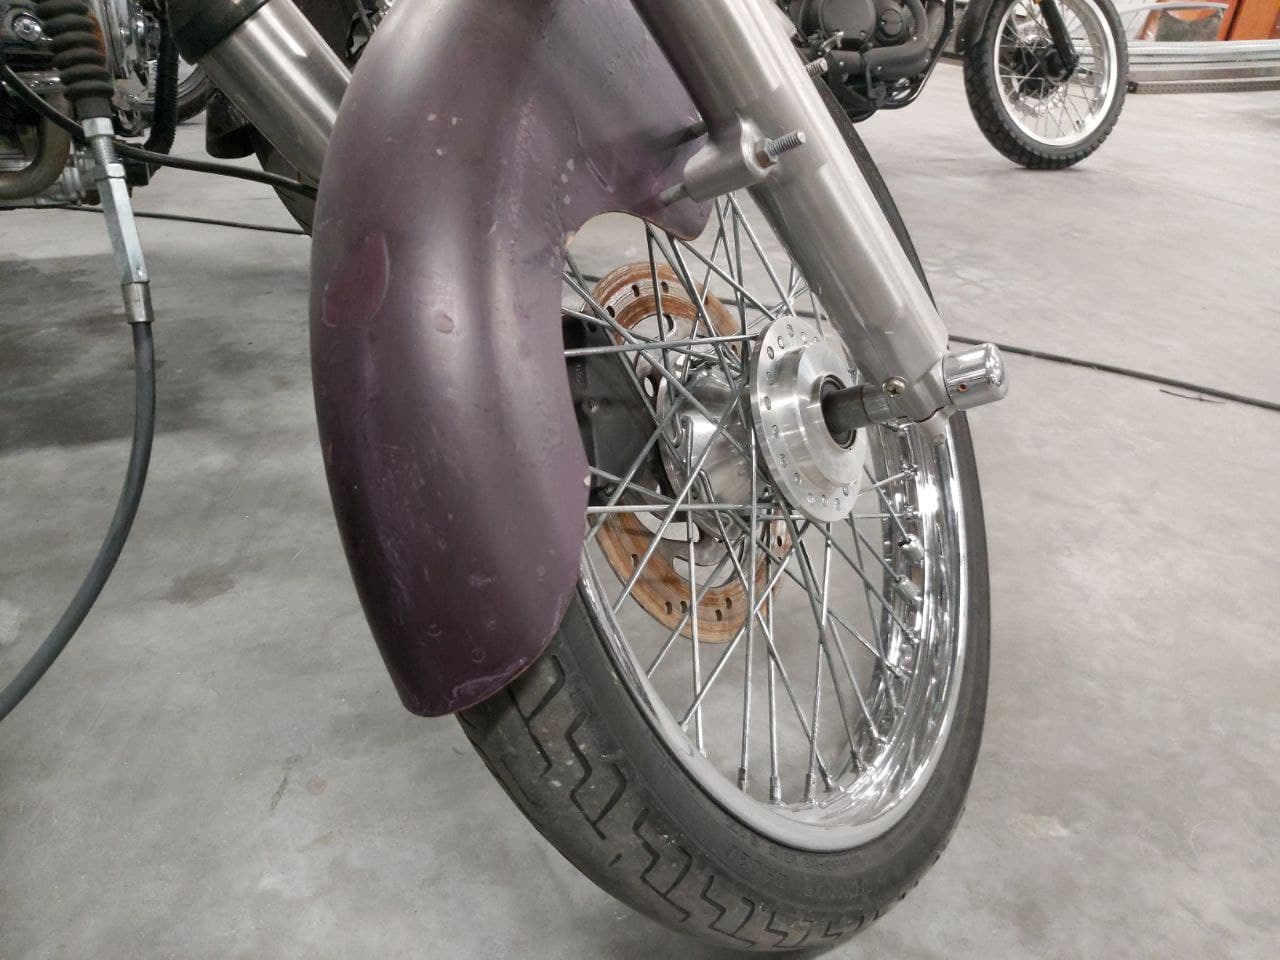 Harley-Davidson Softail 88 #2538